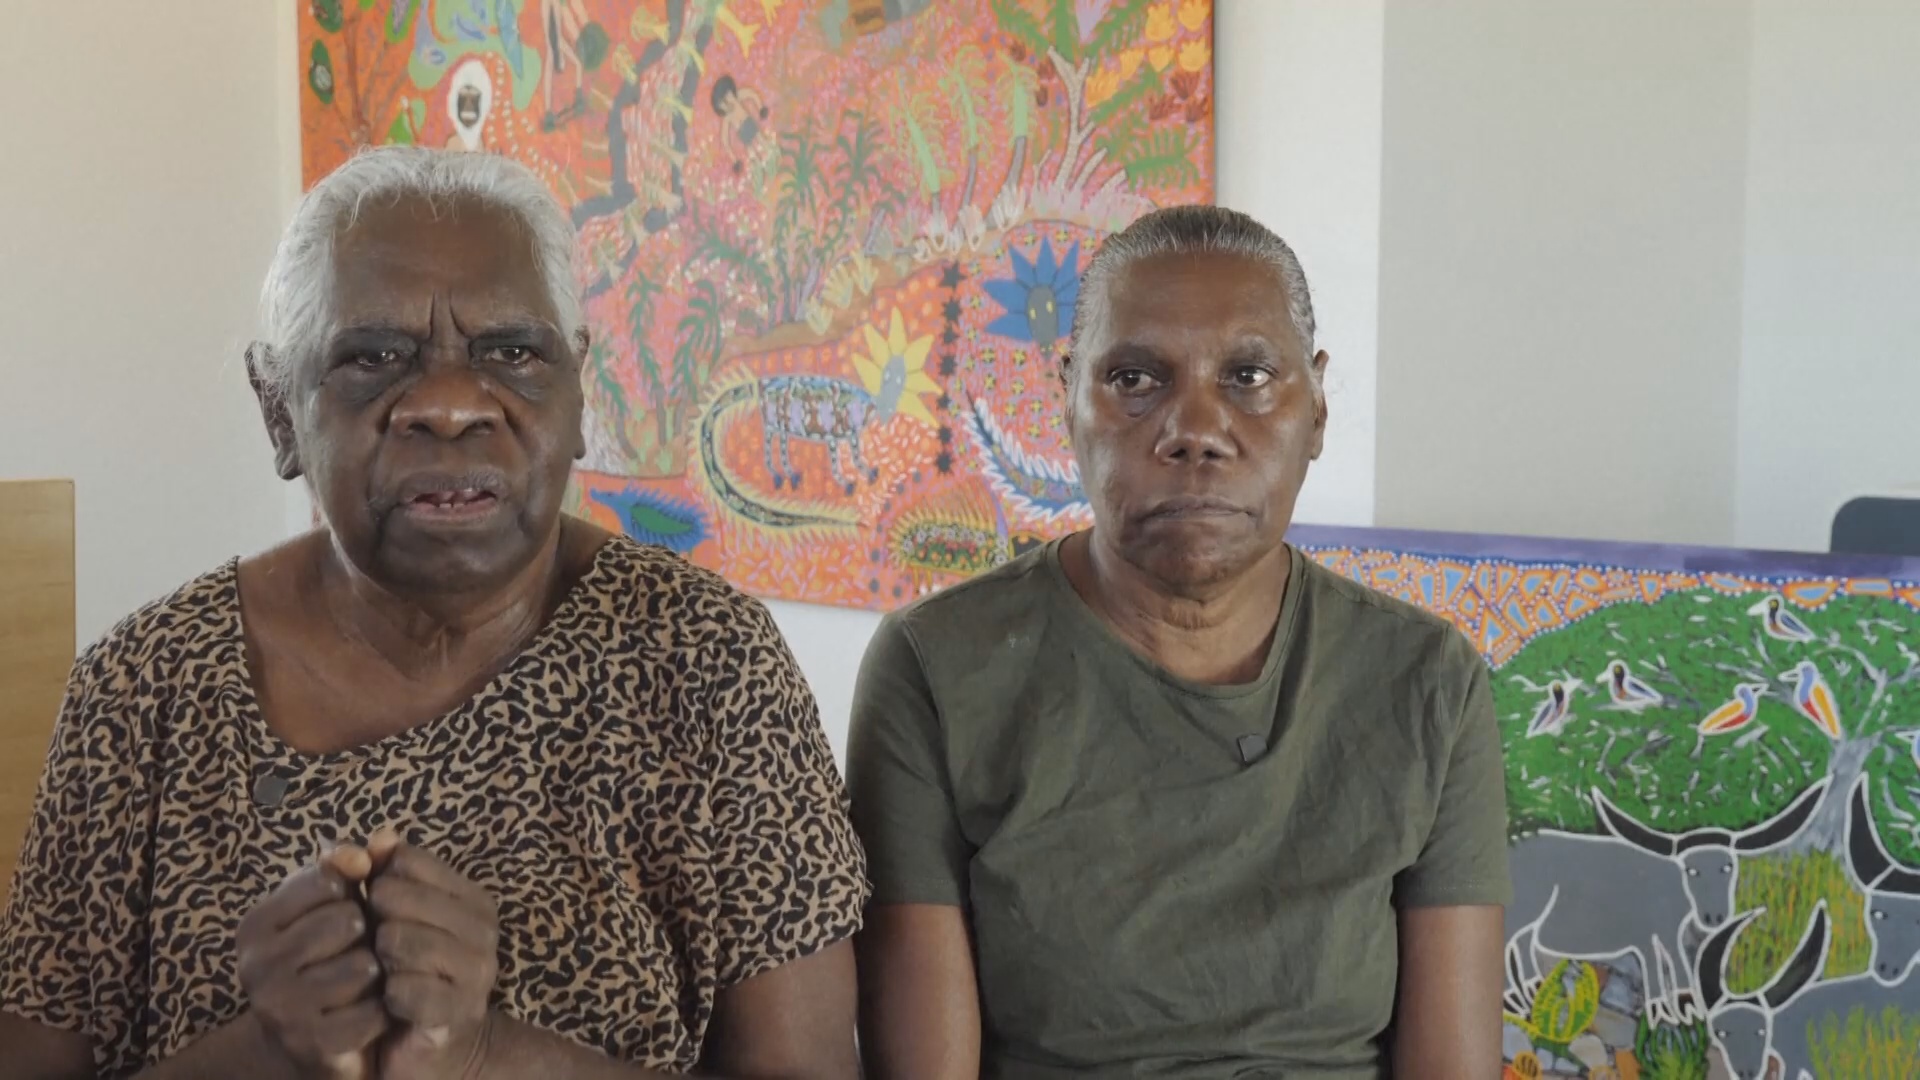 Сёстры-художницы отражают в картинах жизнь аборигенов Австралии